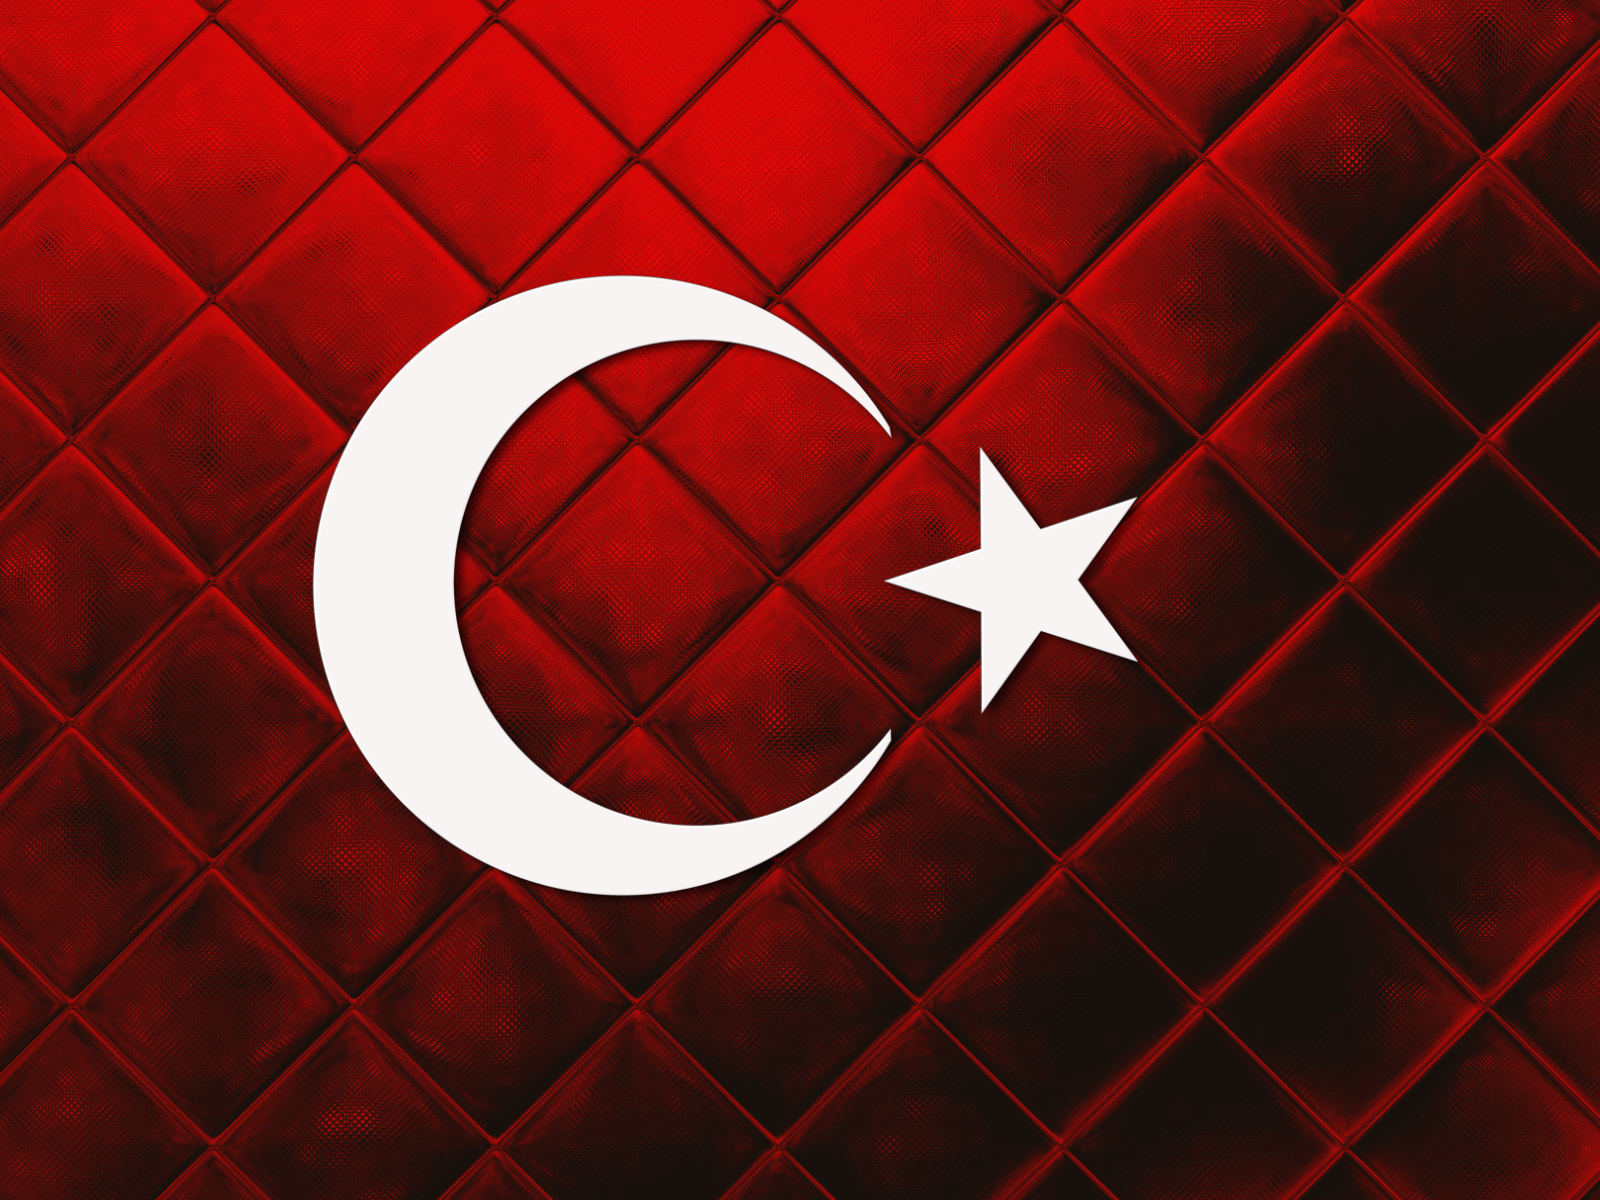 Yeni 2017 Tasarim Turkiye Bayragi Turkiye Logosu Ataturk Turkey Tc Turkiye Turkie Turkei Turkei Part 2 - turk bayragi roblox